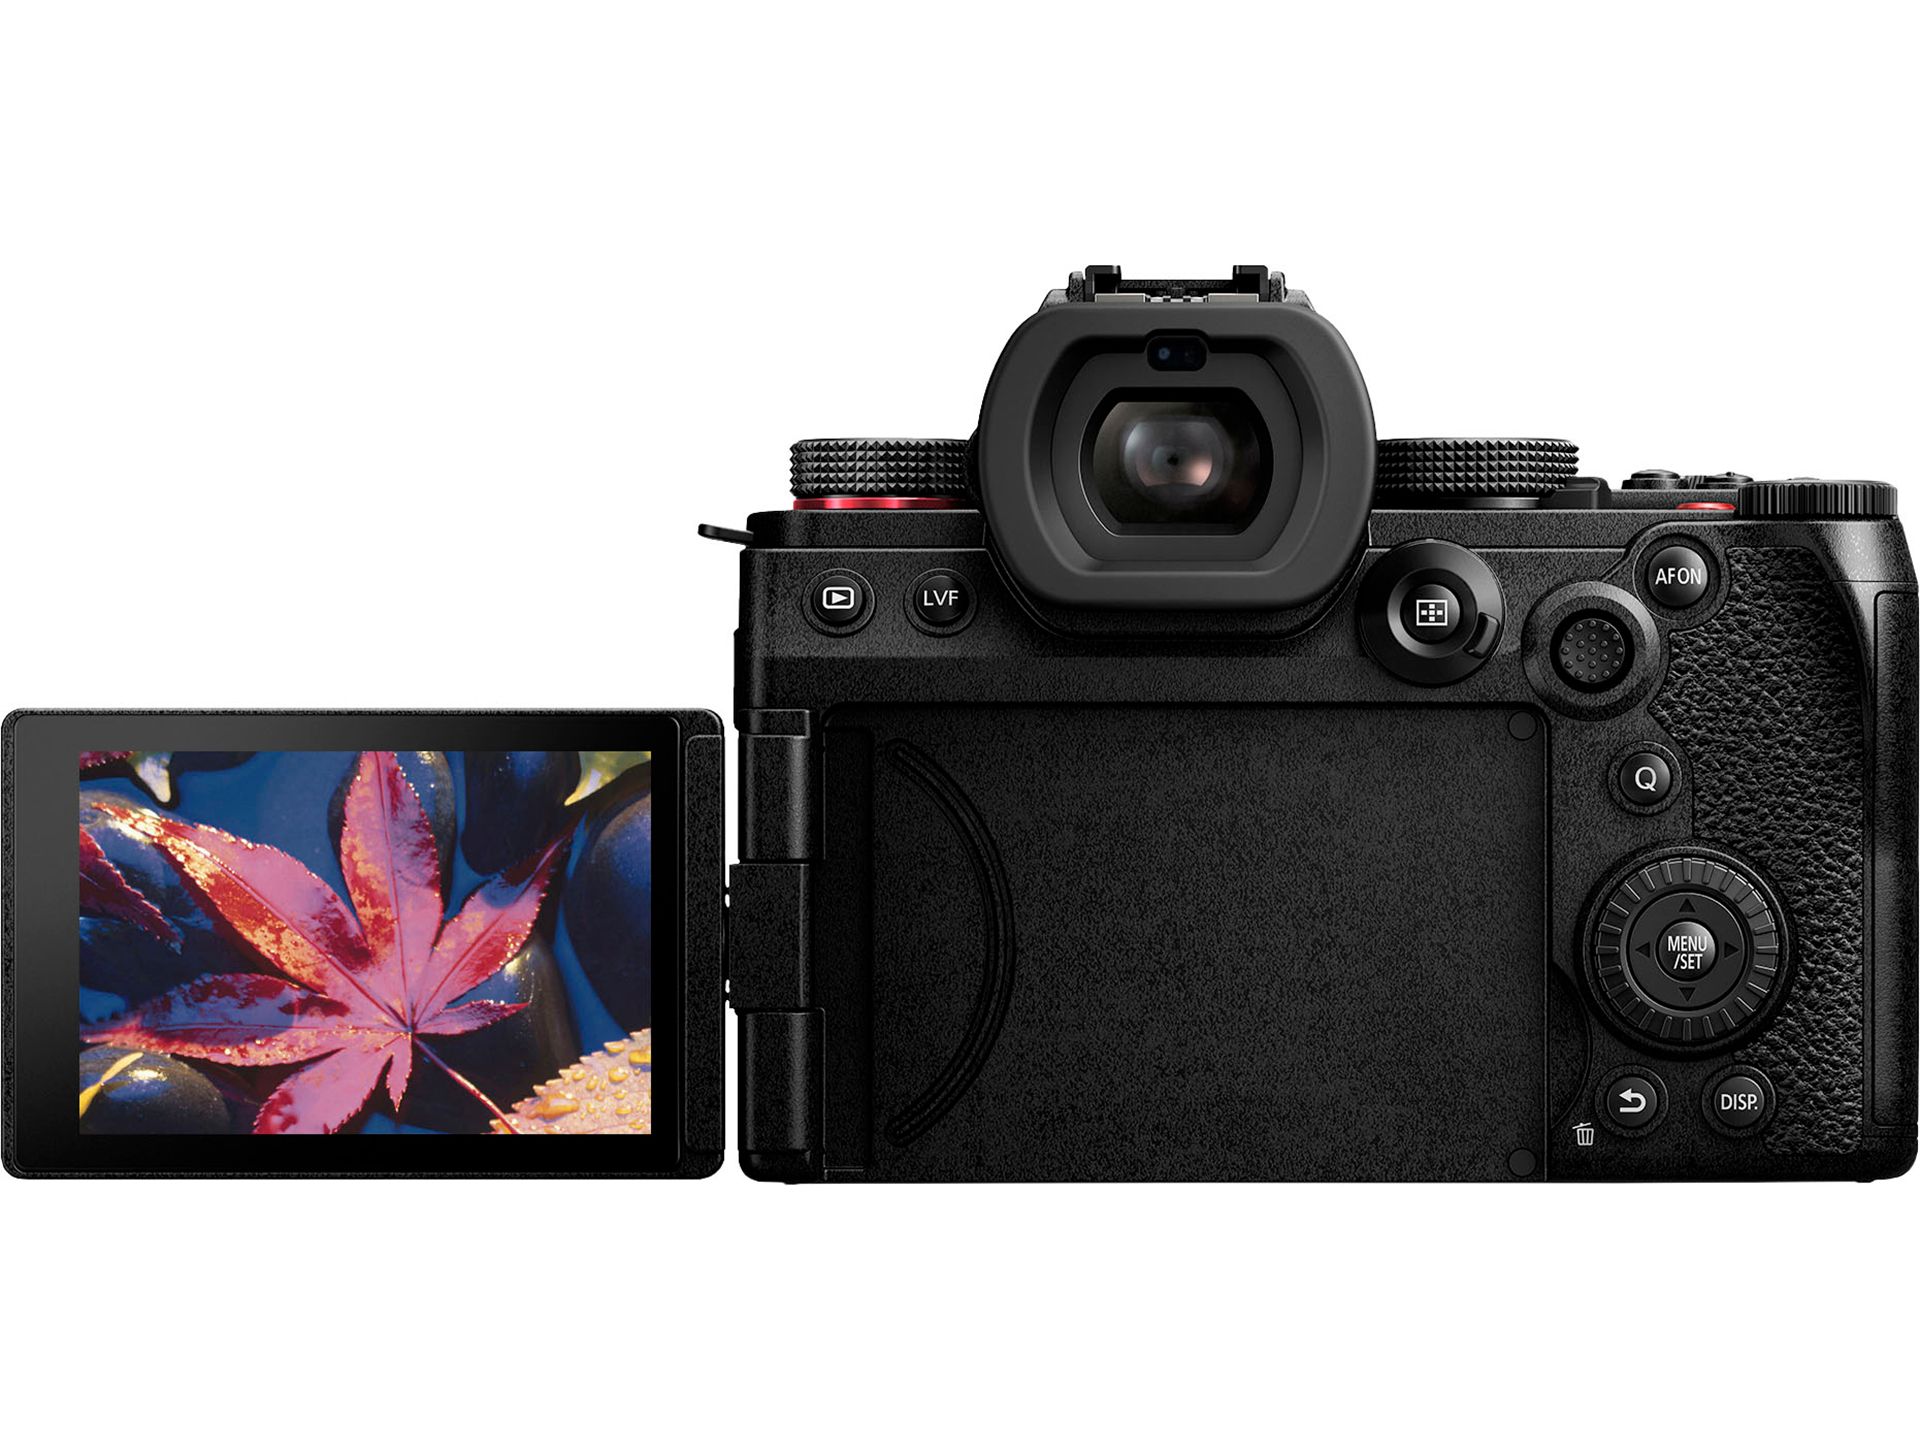 دوربین S5II از نمای پشتی به همراه ویزور بازشده و در حال نمایش تصویر